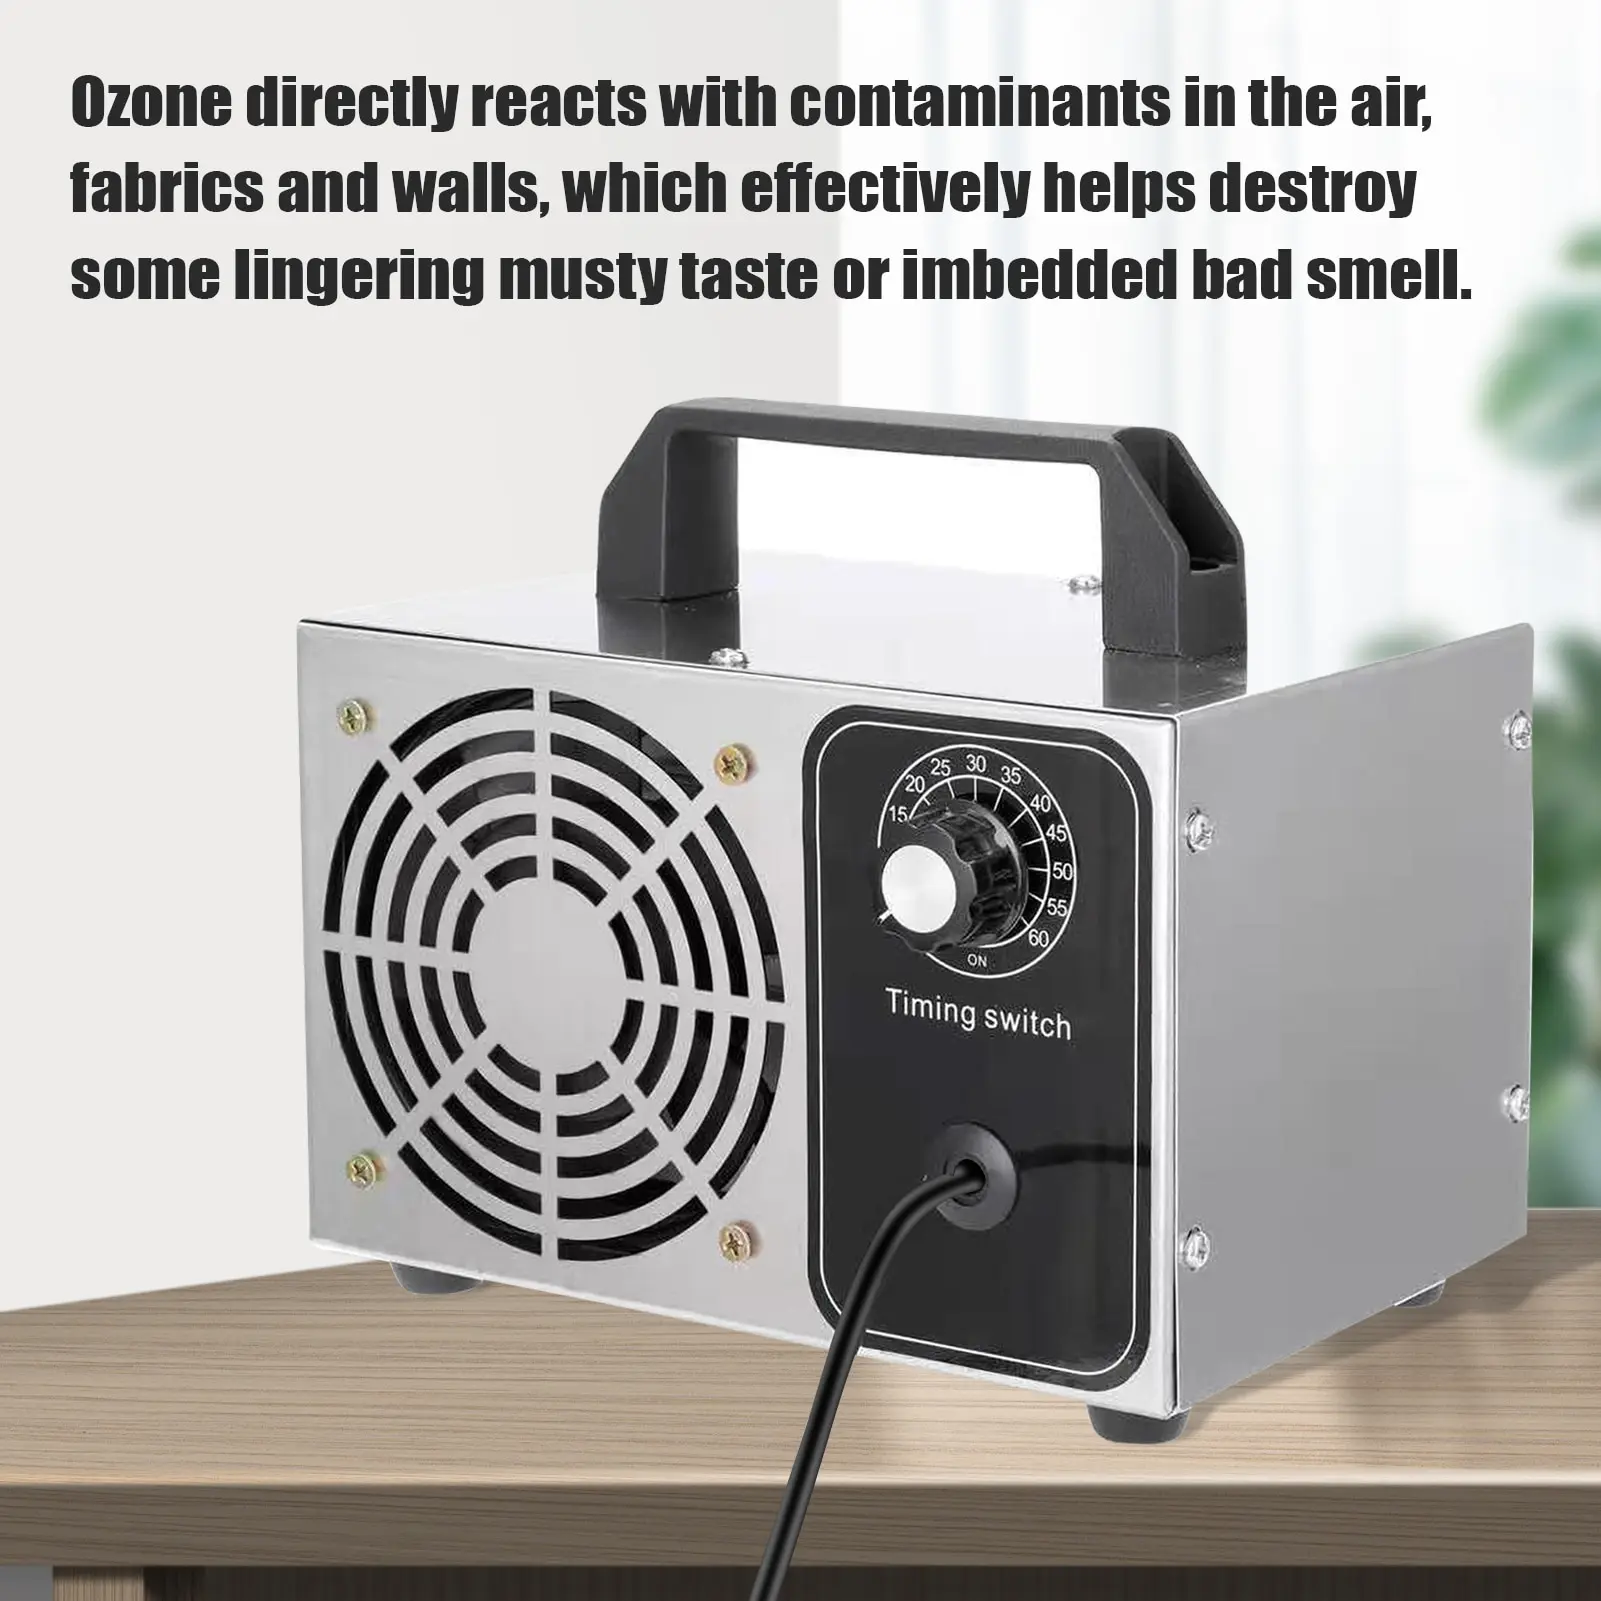 28/32 g/h Ozon Aparatul Generator de Ozon O3 Aer Purificator Aer Deodorant pentru Bucătărie Acasă Biroul Masina